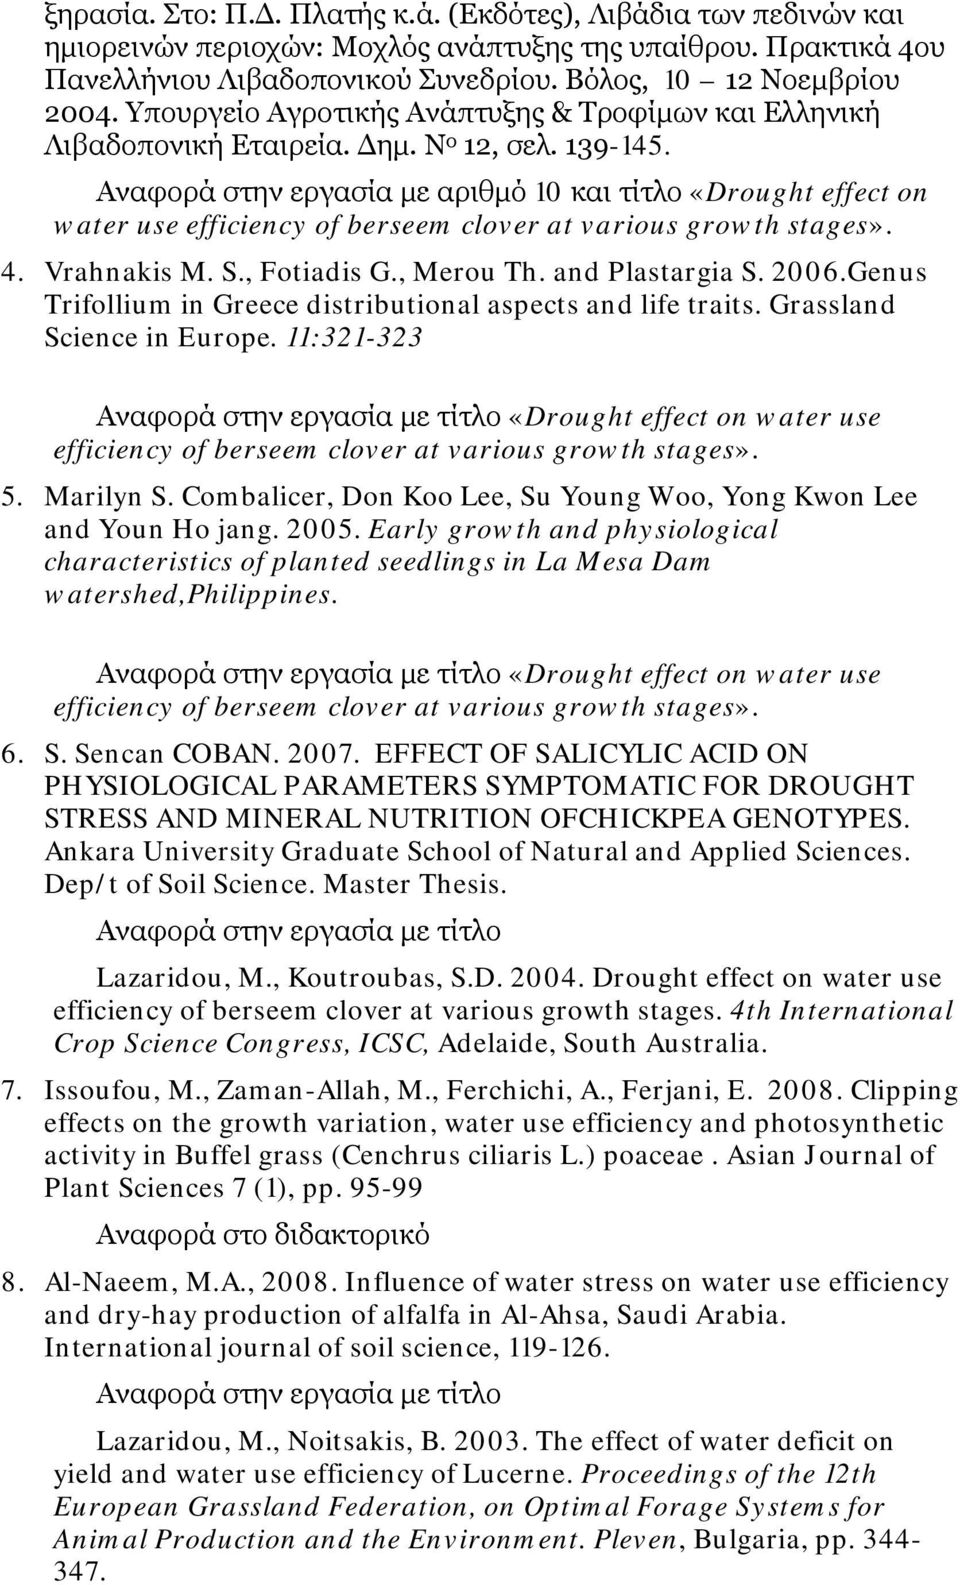 Αναφορά στην εργασία με αριθμό 10 και τίτλο «Drought effect on water use efficiency of berseem clover at various growth stages». 4. Vrahnakis M. S., Fotiadis G., Merou Th. and Plastargia S. 2006.